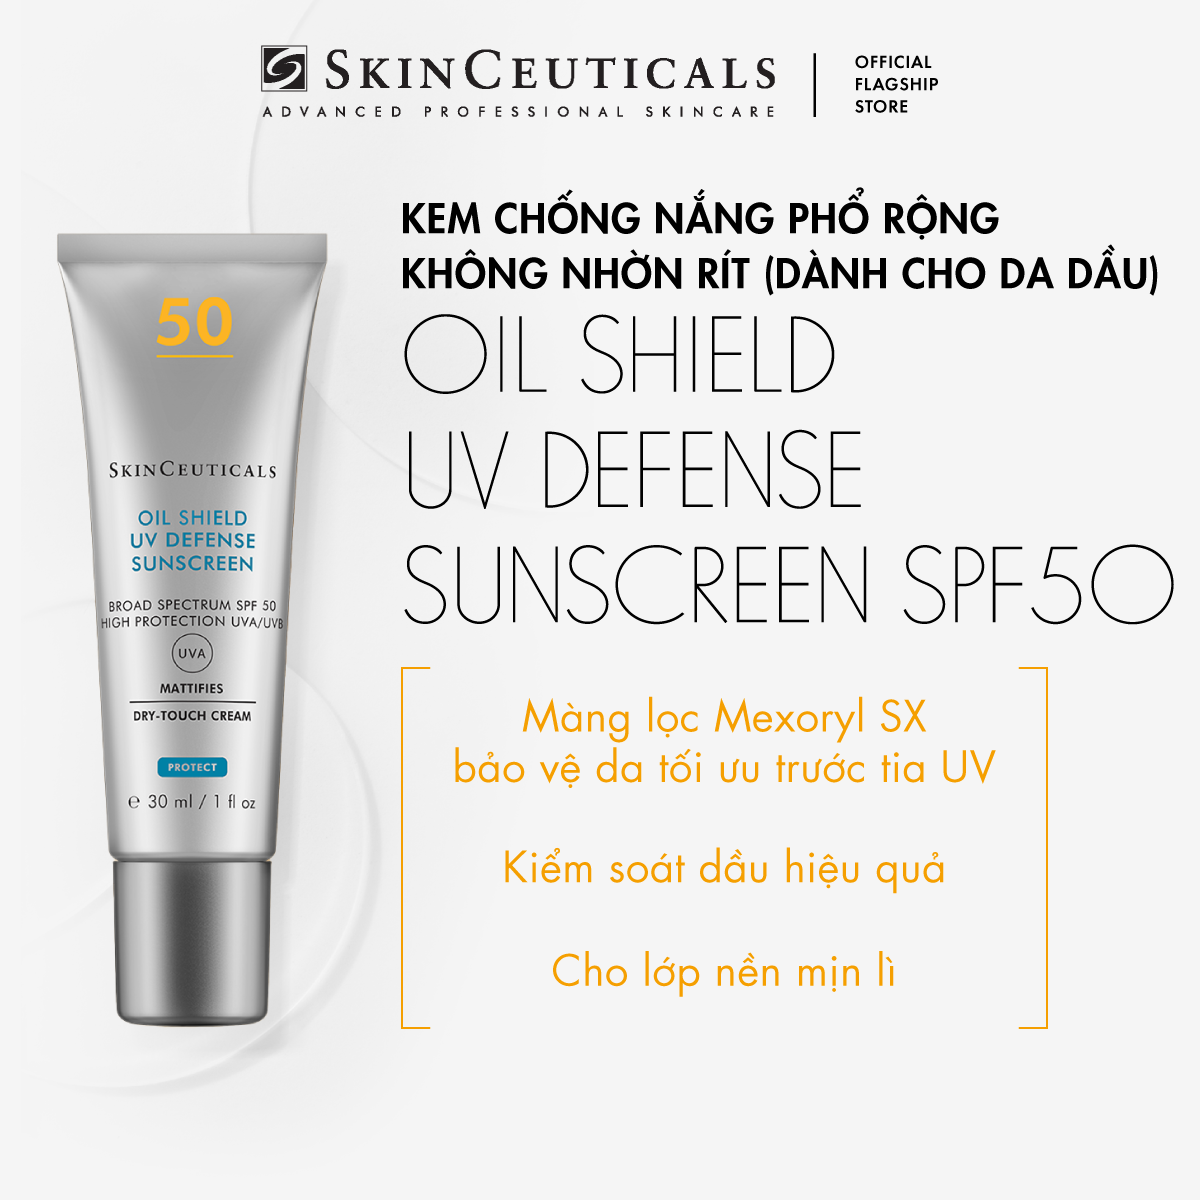 Kem chống nắng phổ rộng không nhờn rít Skinceuticals Oil Shield UV Defense Sunscreen SPF 50 kiềm dầu bảo vệ da tối ưu trước tia UV 30ml